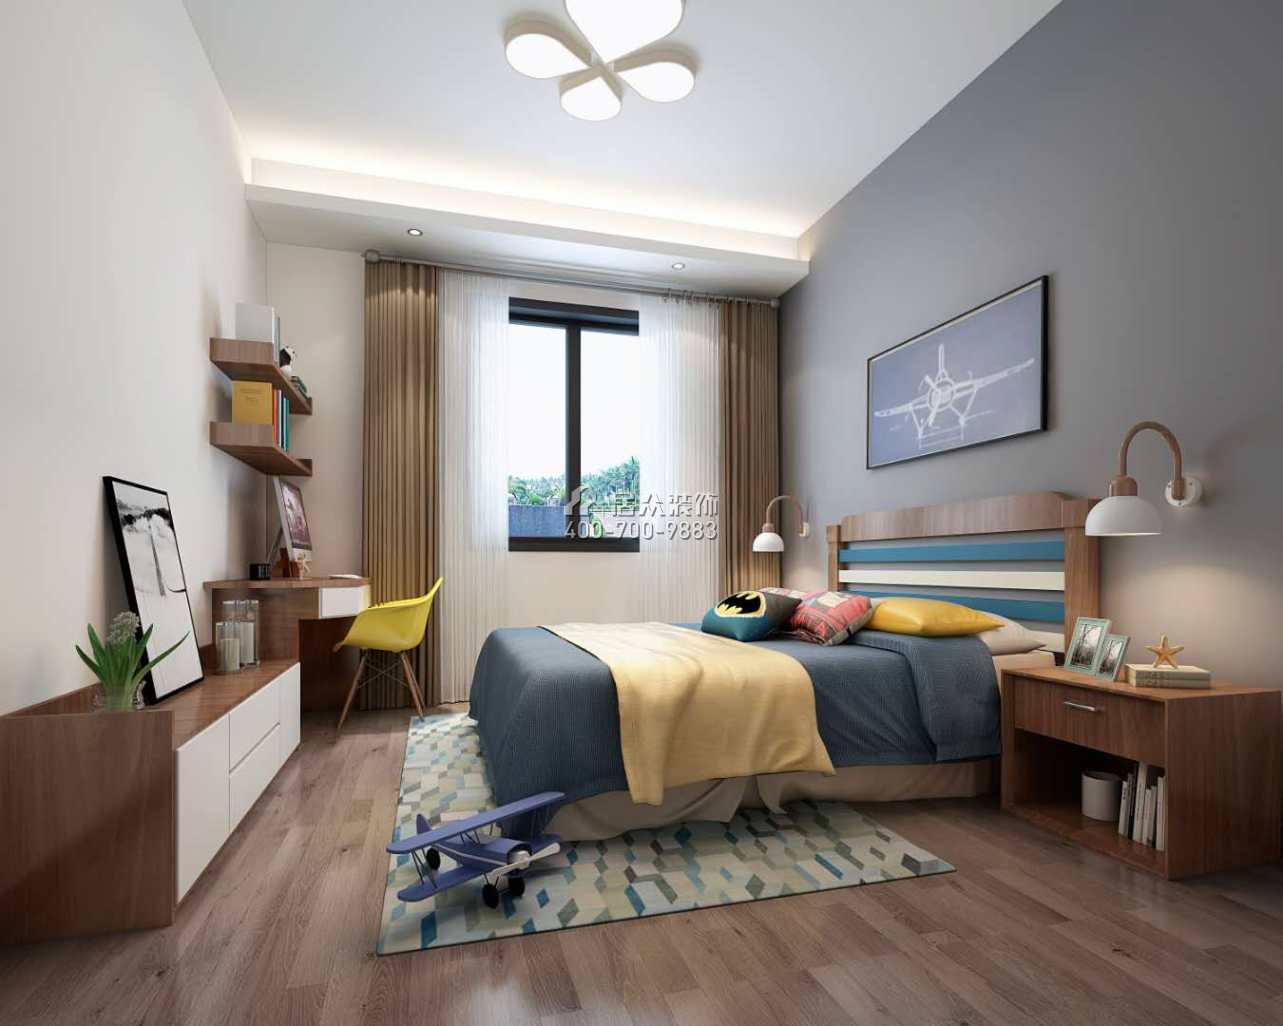 泉州中駿天峰240平方米現代簡約風格復式戶型臥室裝修效果圖